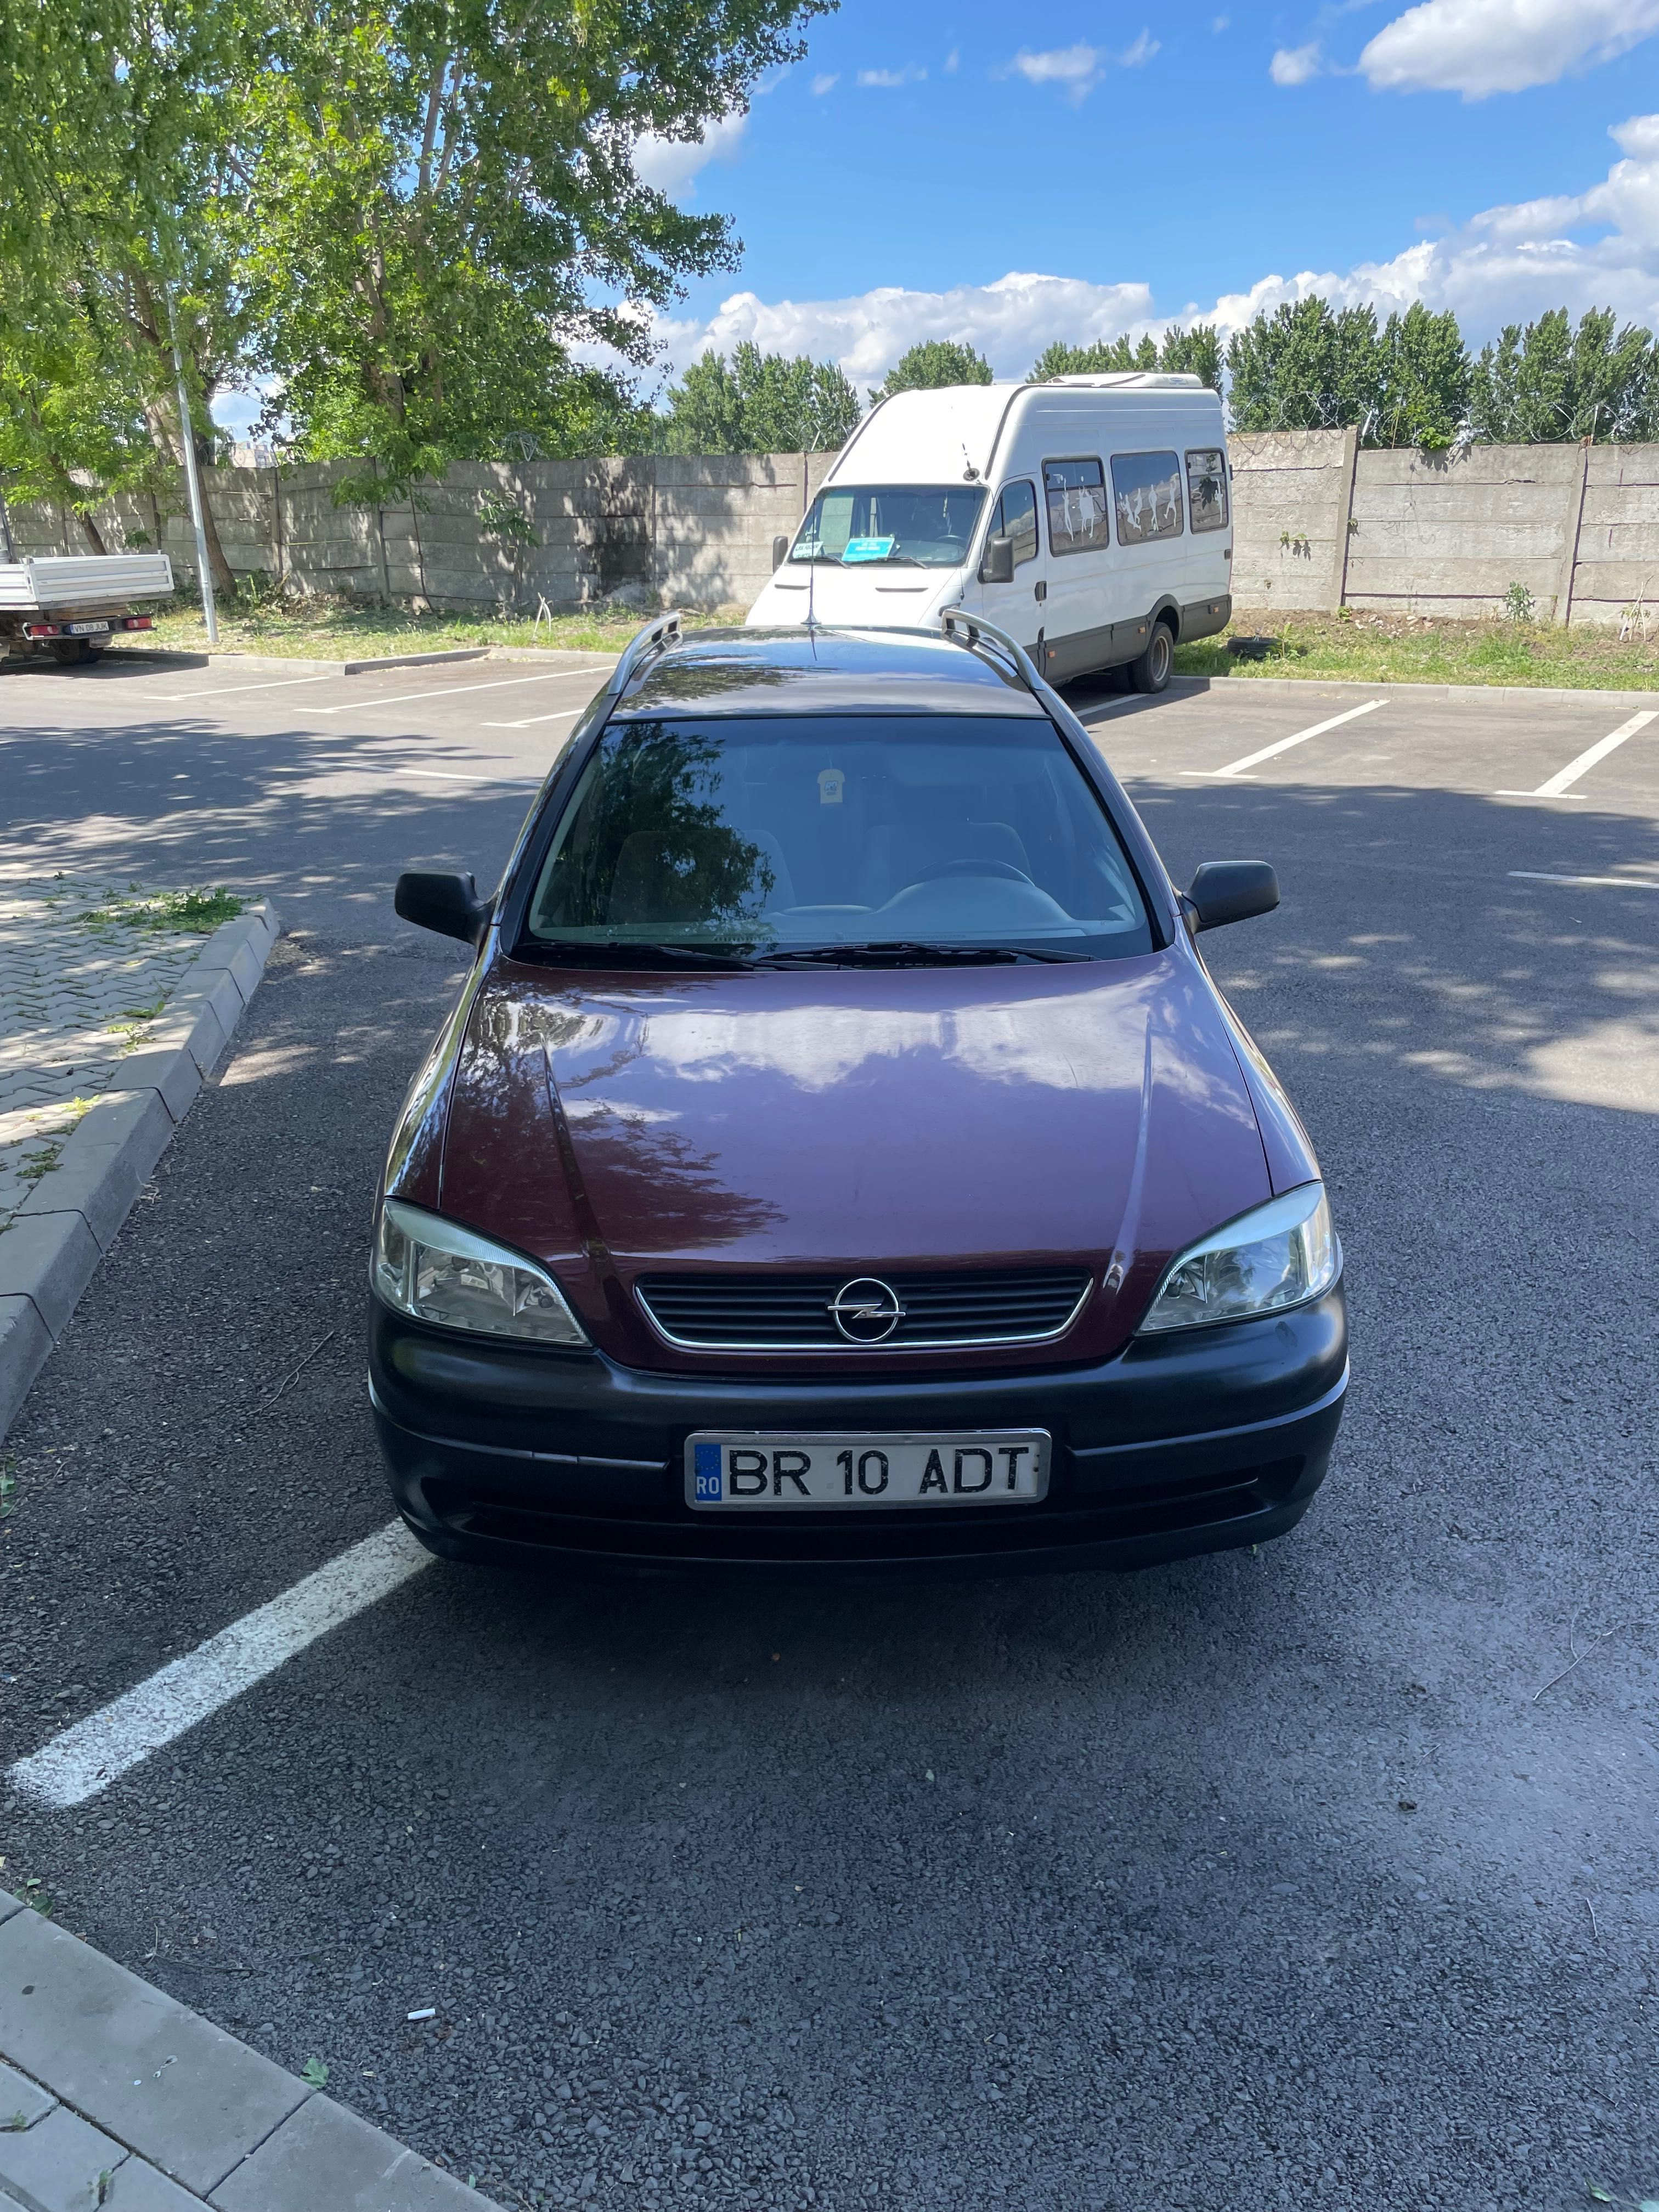 Vând Opel Astra G Caravan an 2002 motor 16 benzină (Nu ofer Fiscal)